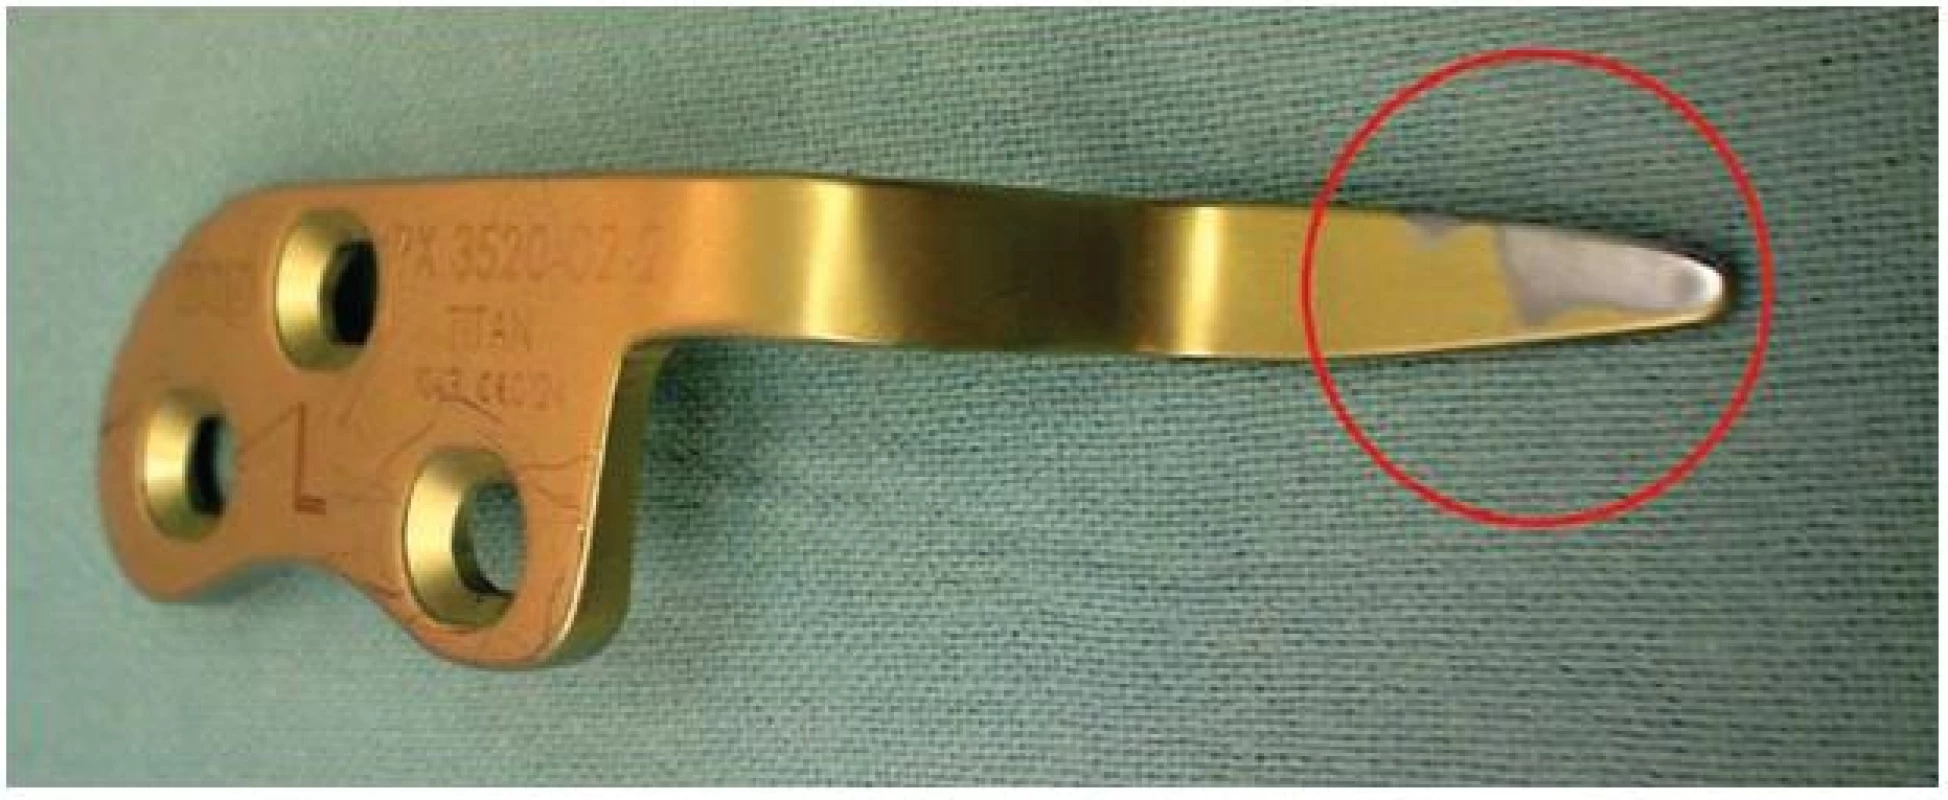 Dlaha po extrakci, je patrný otěr materiálu v místě kontaktu s akromiem
Fig. 4: Implant removal. Abrasion can be seen in the place of contact with the acromion